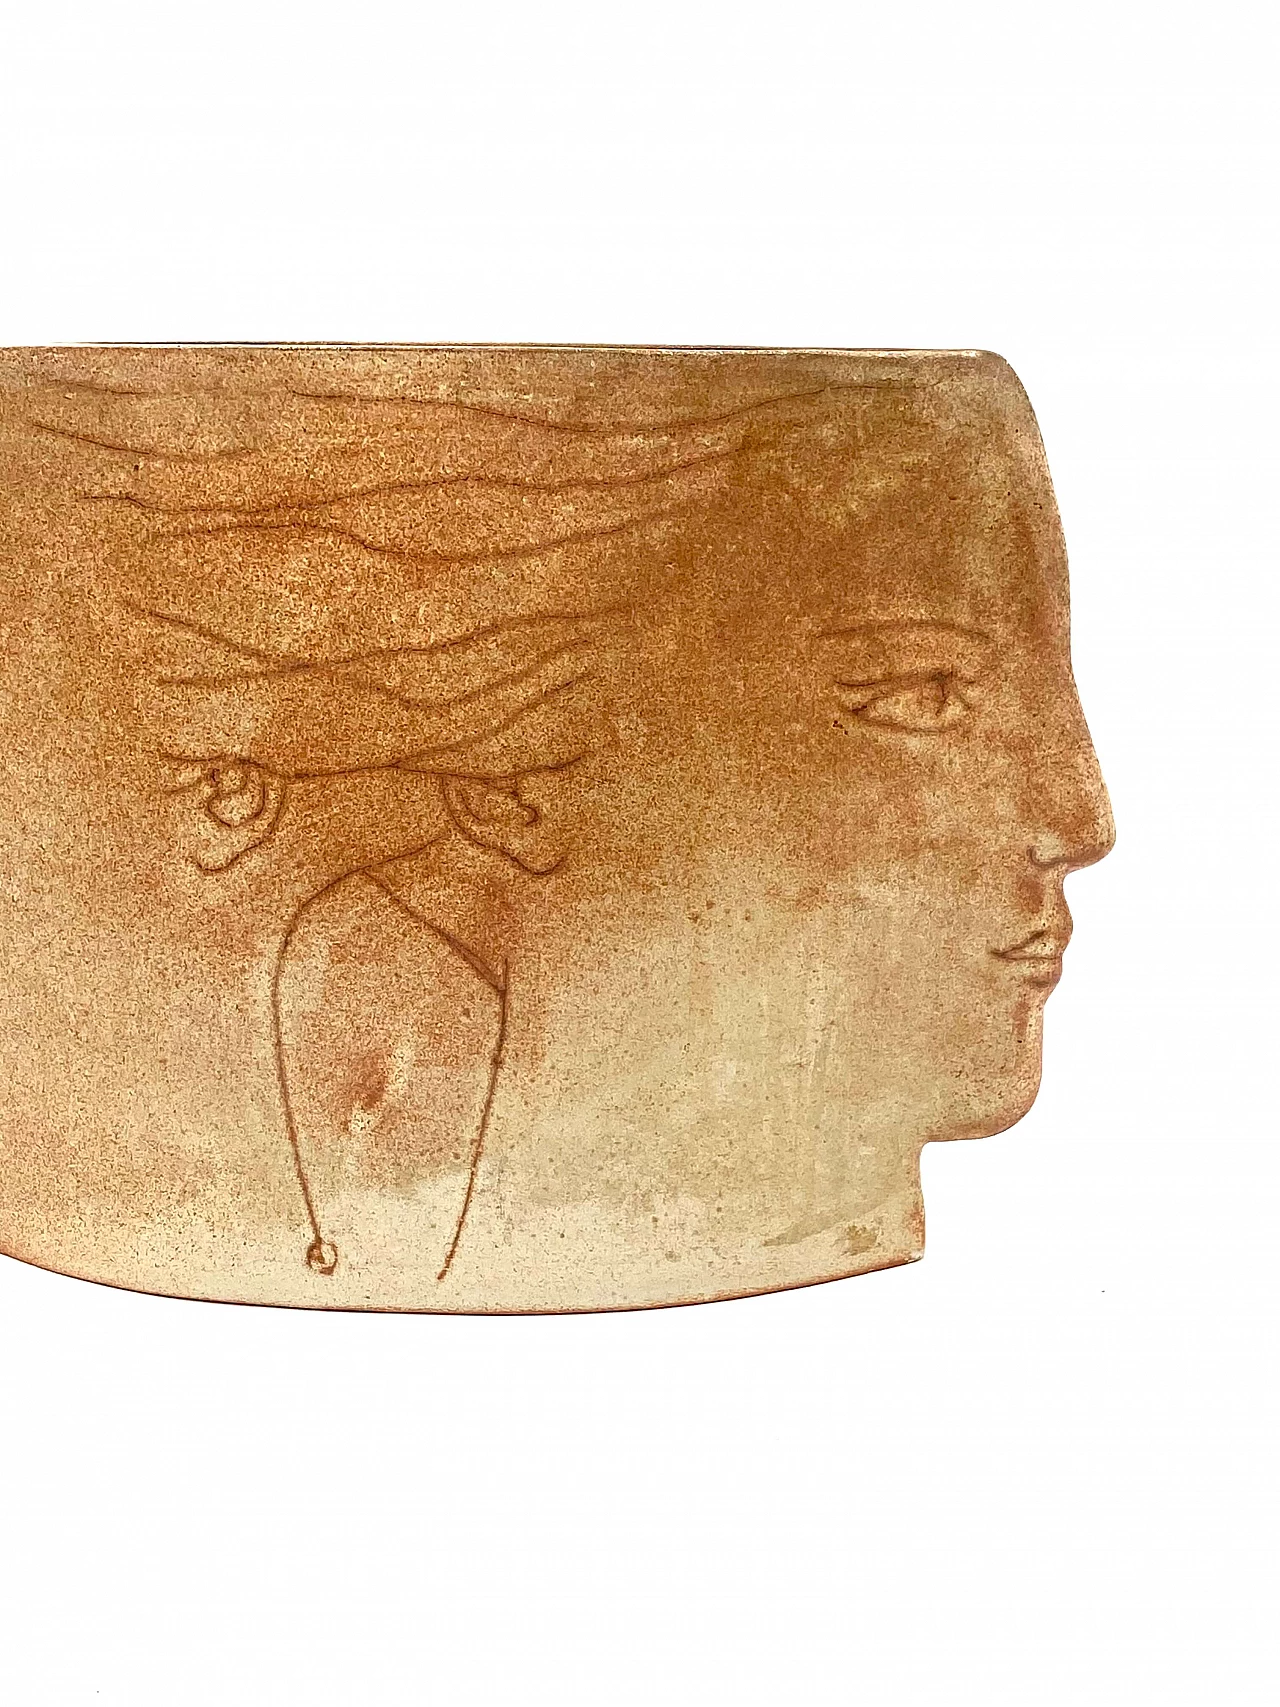 Vaso in ceramica Visages, anni '60 15